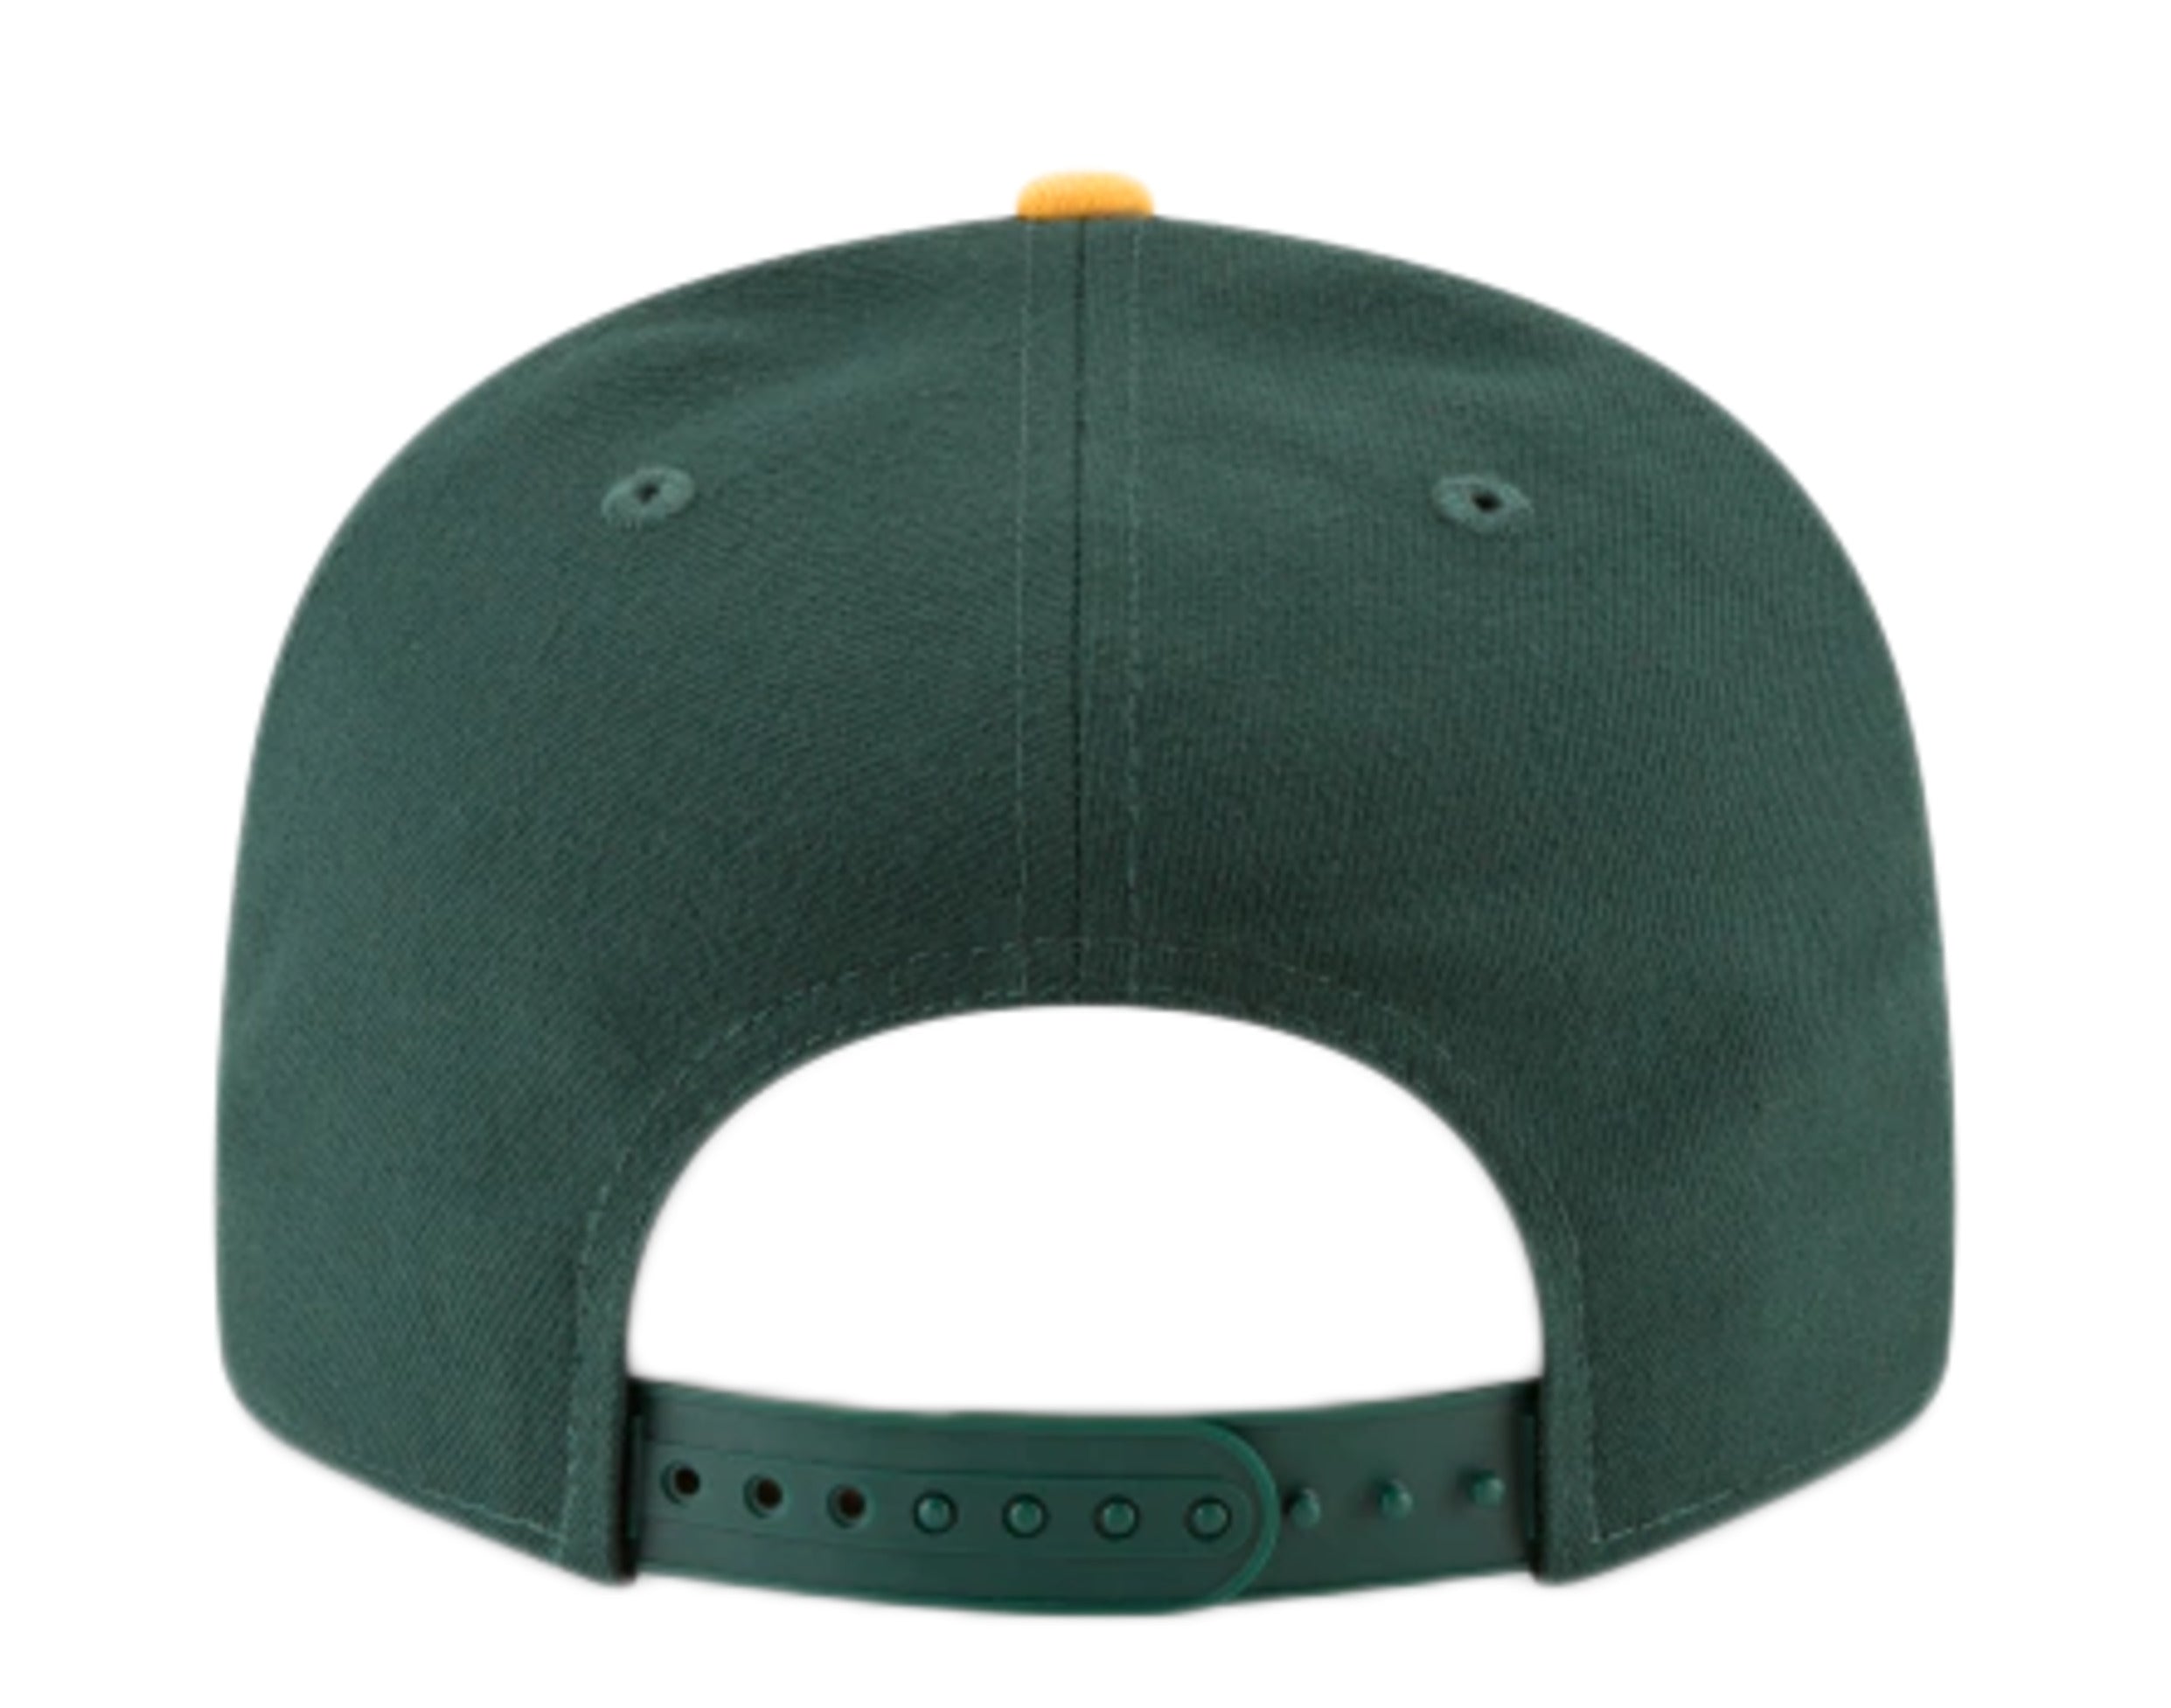 New Era Snapback Cap Oakland Athletics MLB Essential 9Fifty Adult  adjustable - TOP HATS